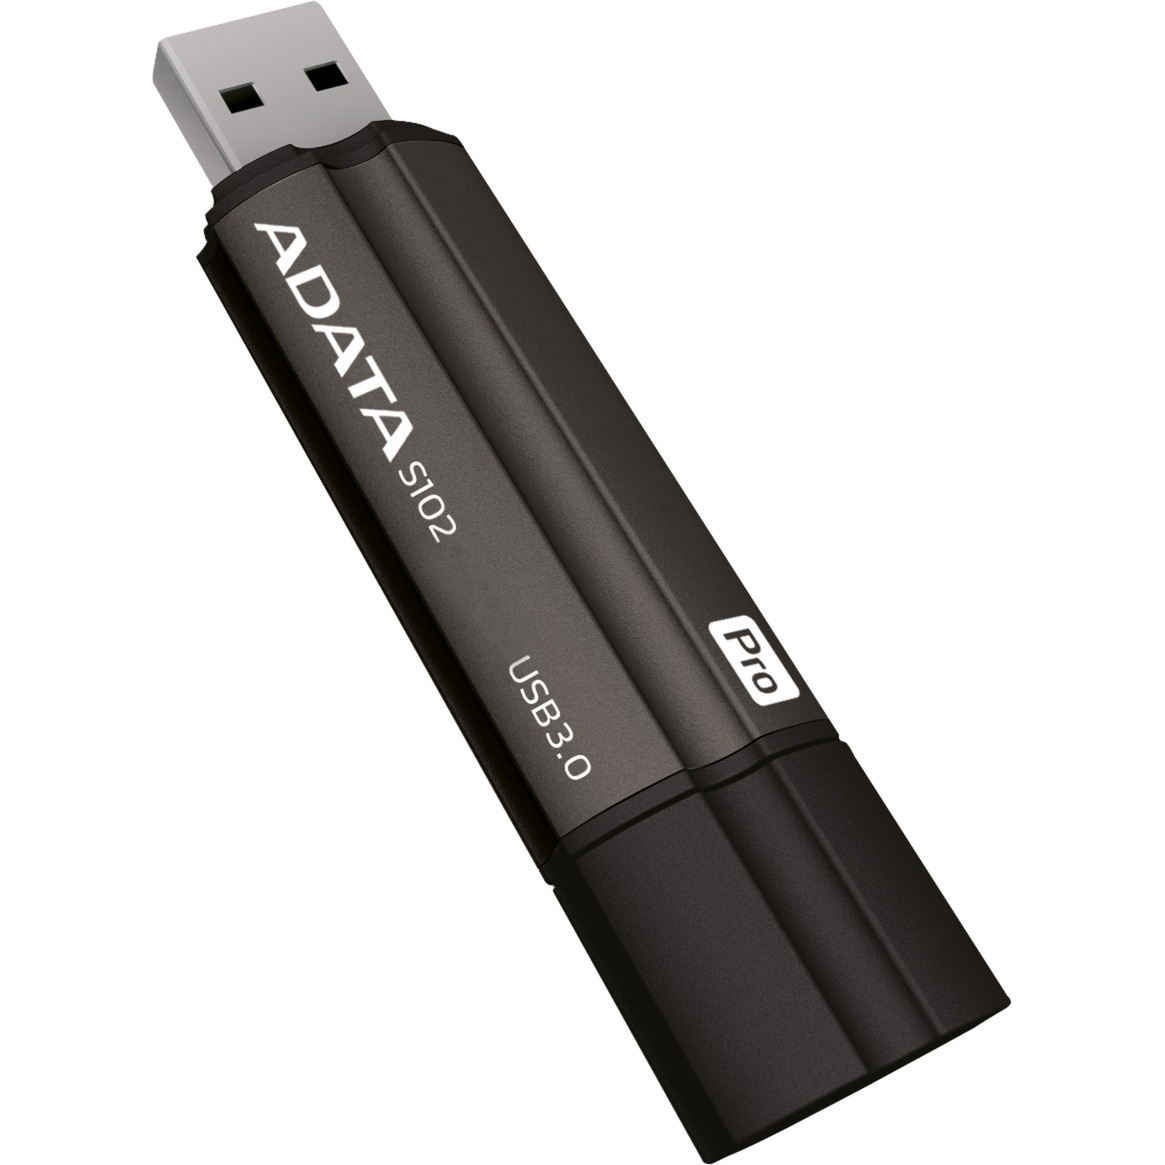 Image of Alternate - S102 Pro 128 GB, USB-Stick online einkaufen bei Alternate